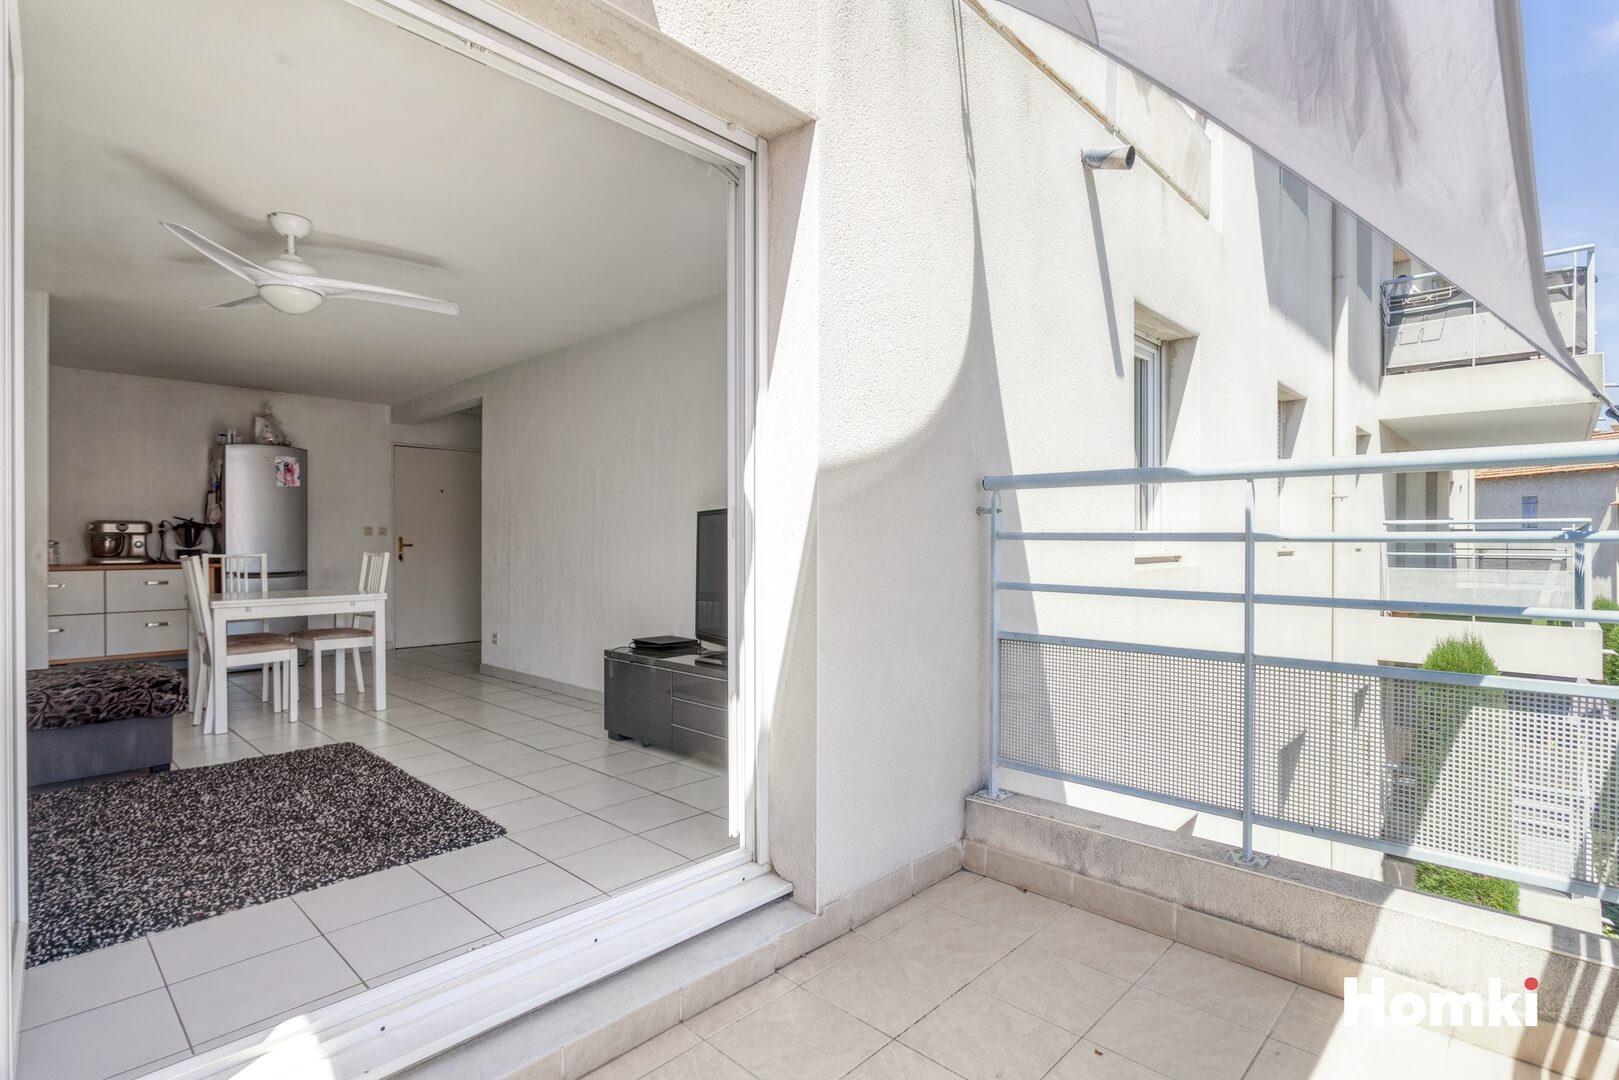 Homki - Vente Appartement  de 59.0 m² à Marseille 13016